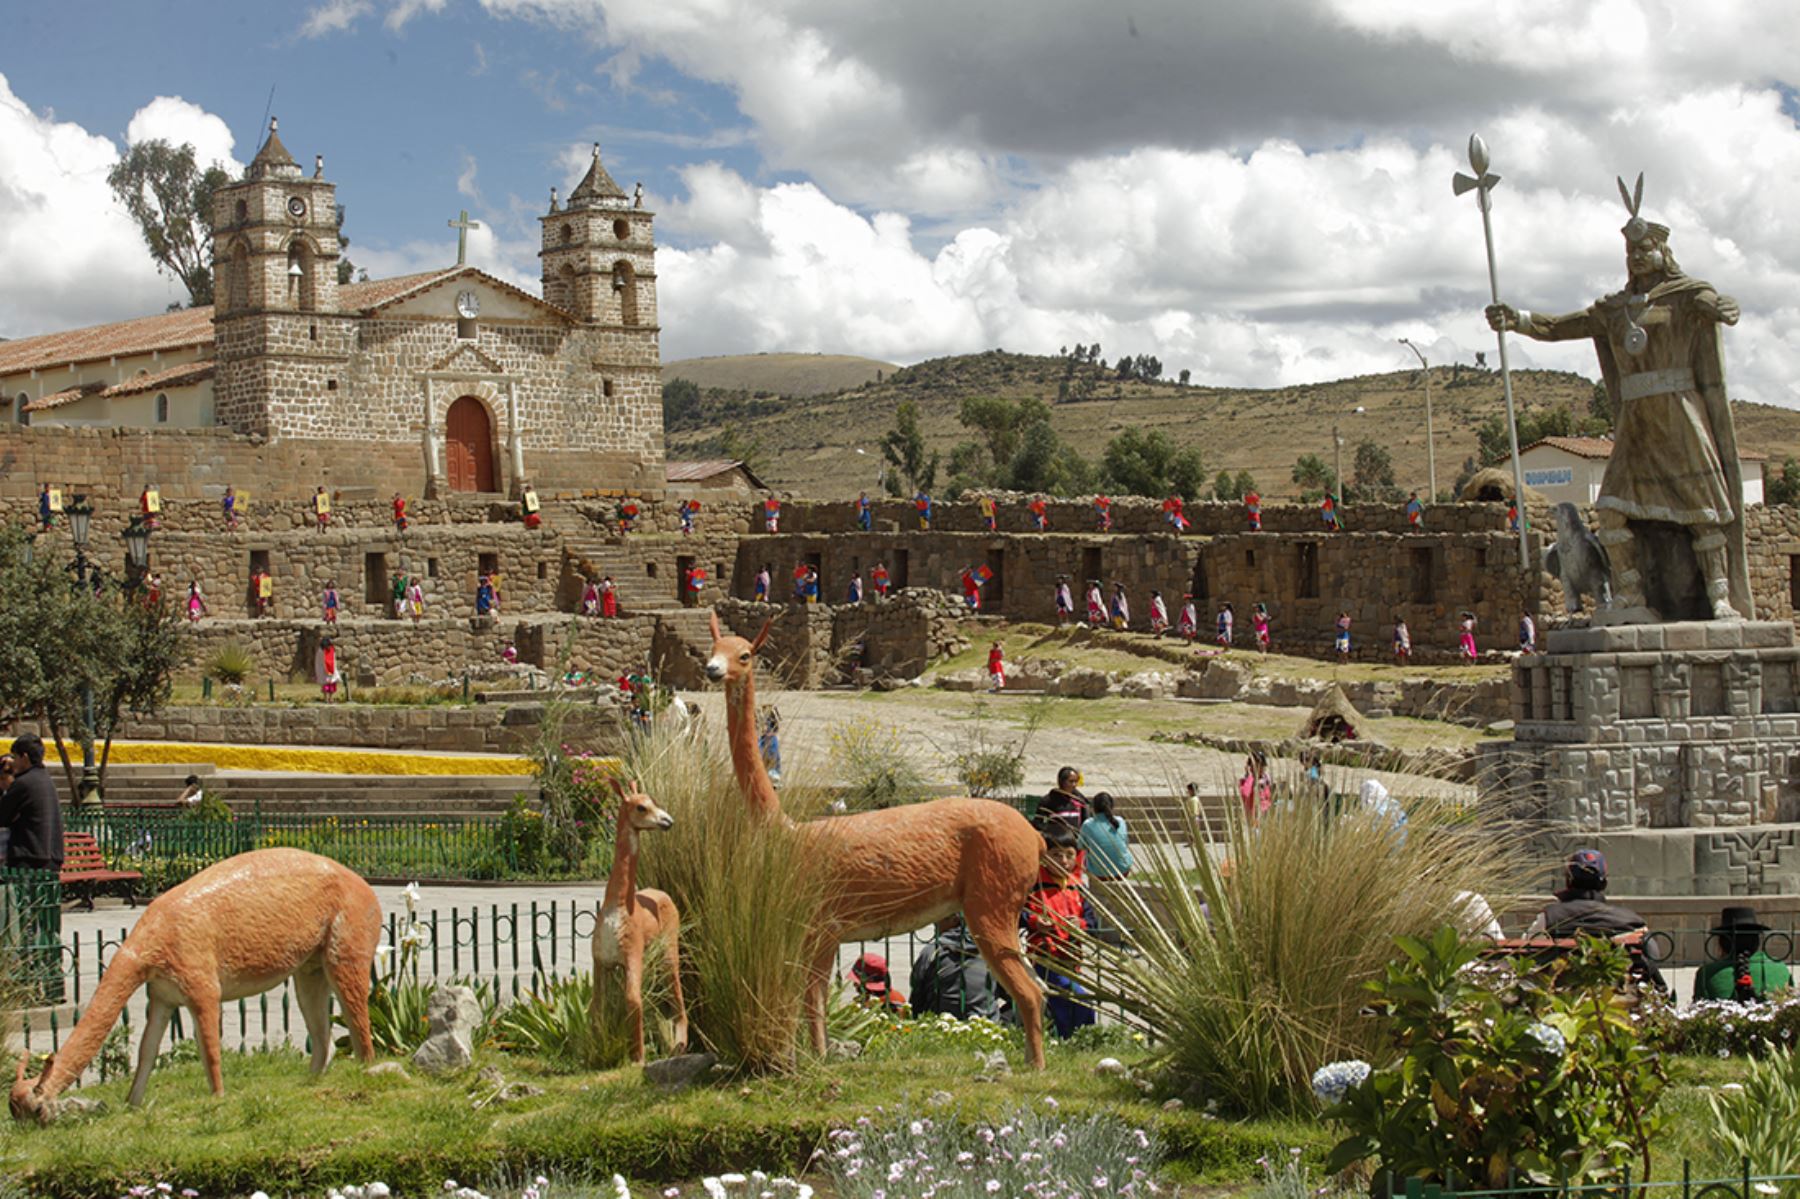 Las regiones del sur peruano ofrecen una amplia gama de atractivos turísticos en los que confluyen la belleza paisajística, zonas arqueológicas, historia, cultura y tradición, además de la gastronomía que deleita a los visitantes nacionales y extranjeros. Foto: ANDINA/archivo.